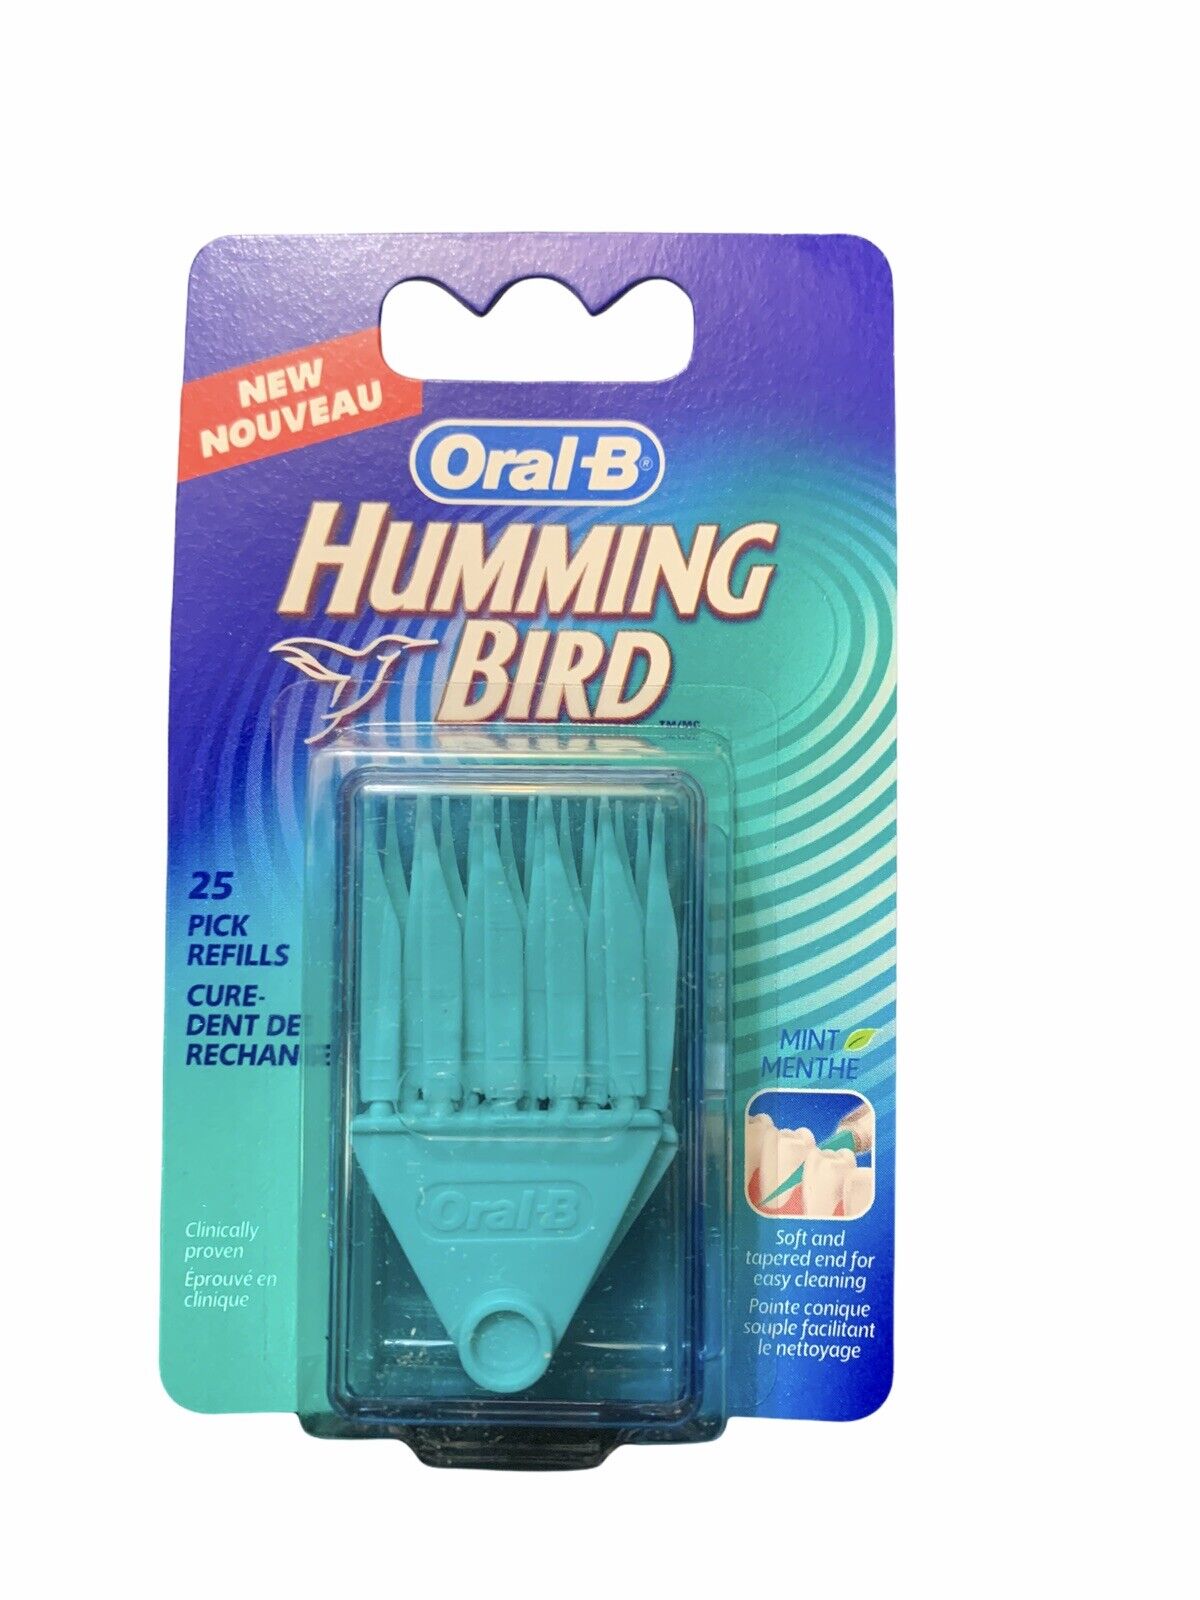 New Oral-B Hummingbird Picks 25 Count Mint Refill Pack Teeth Soft Heads Humming